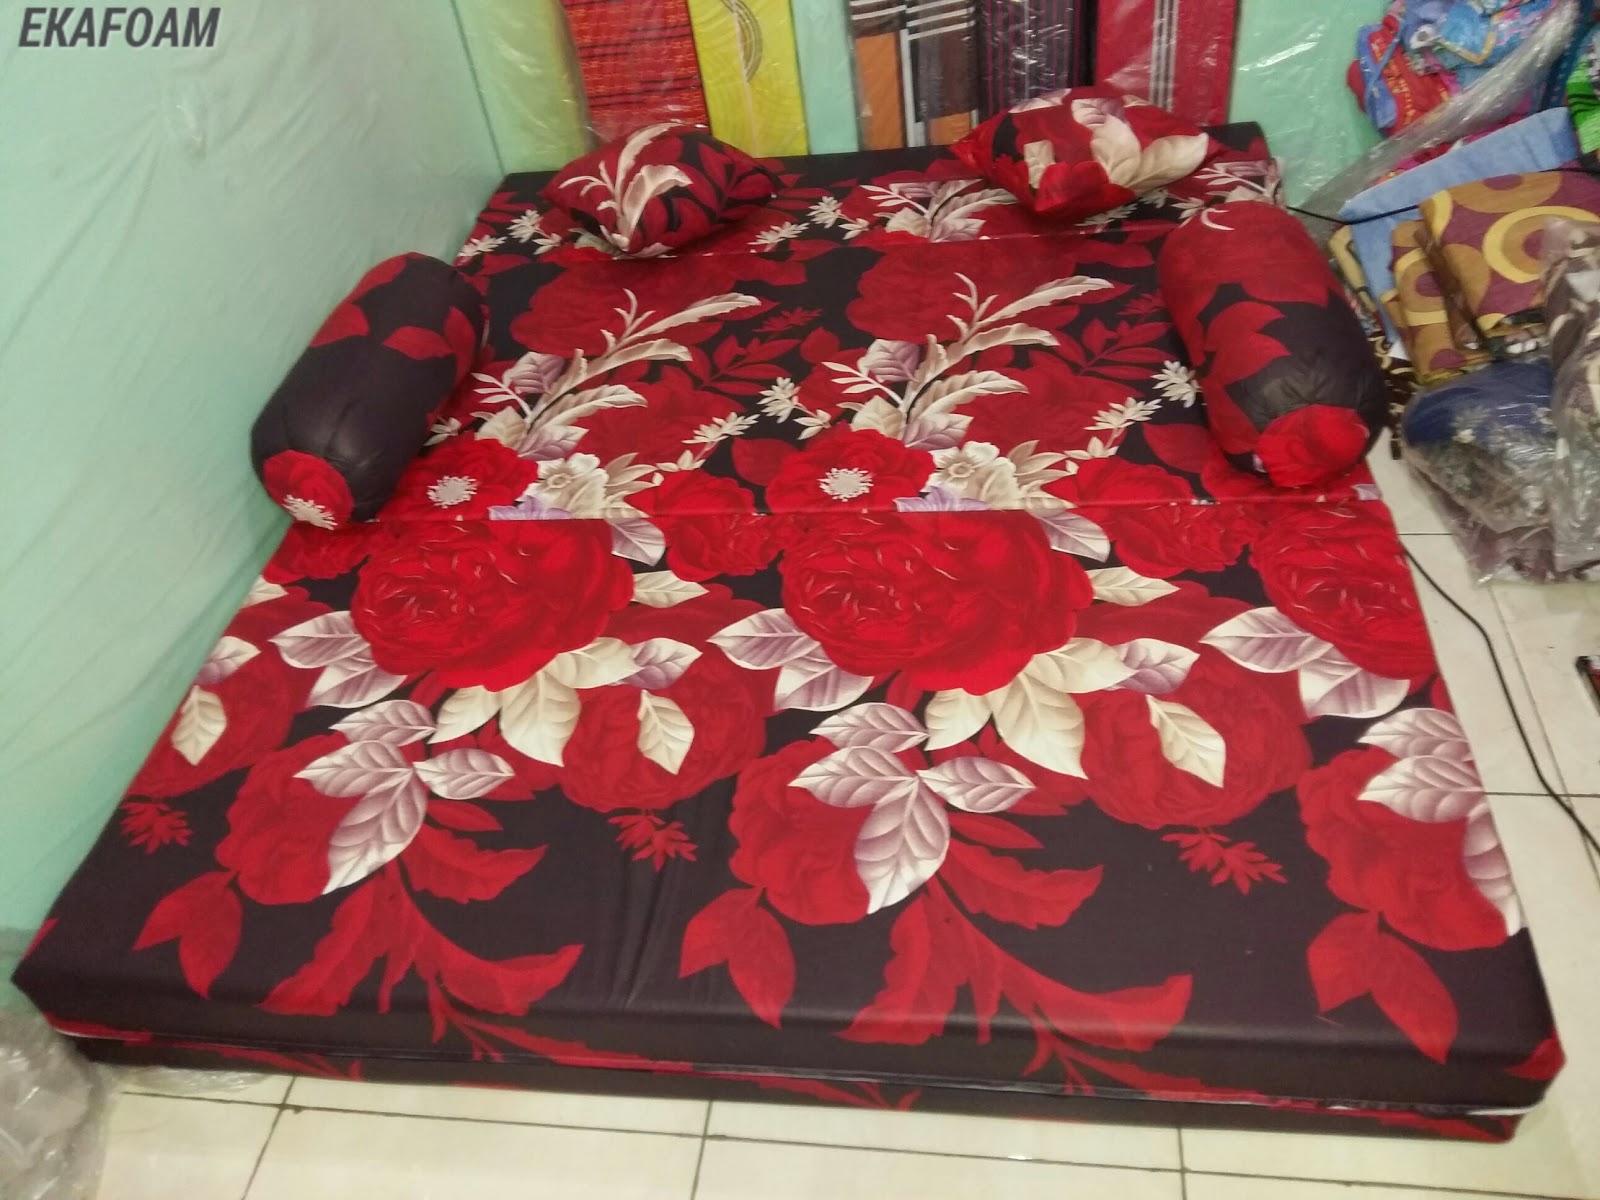 SOFA BED INOAC MOTIF BUNGA ROSIANA Agen Kasur Busa Inoac Tangerang